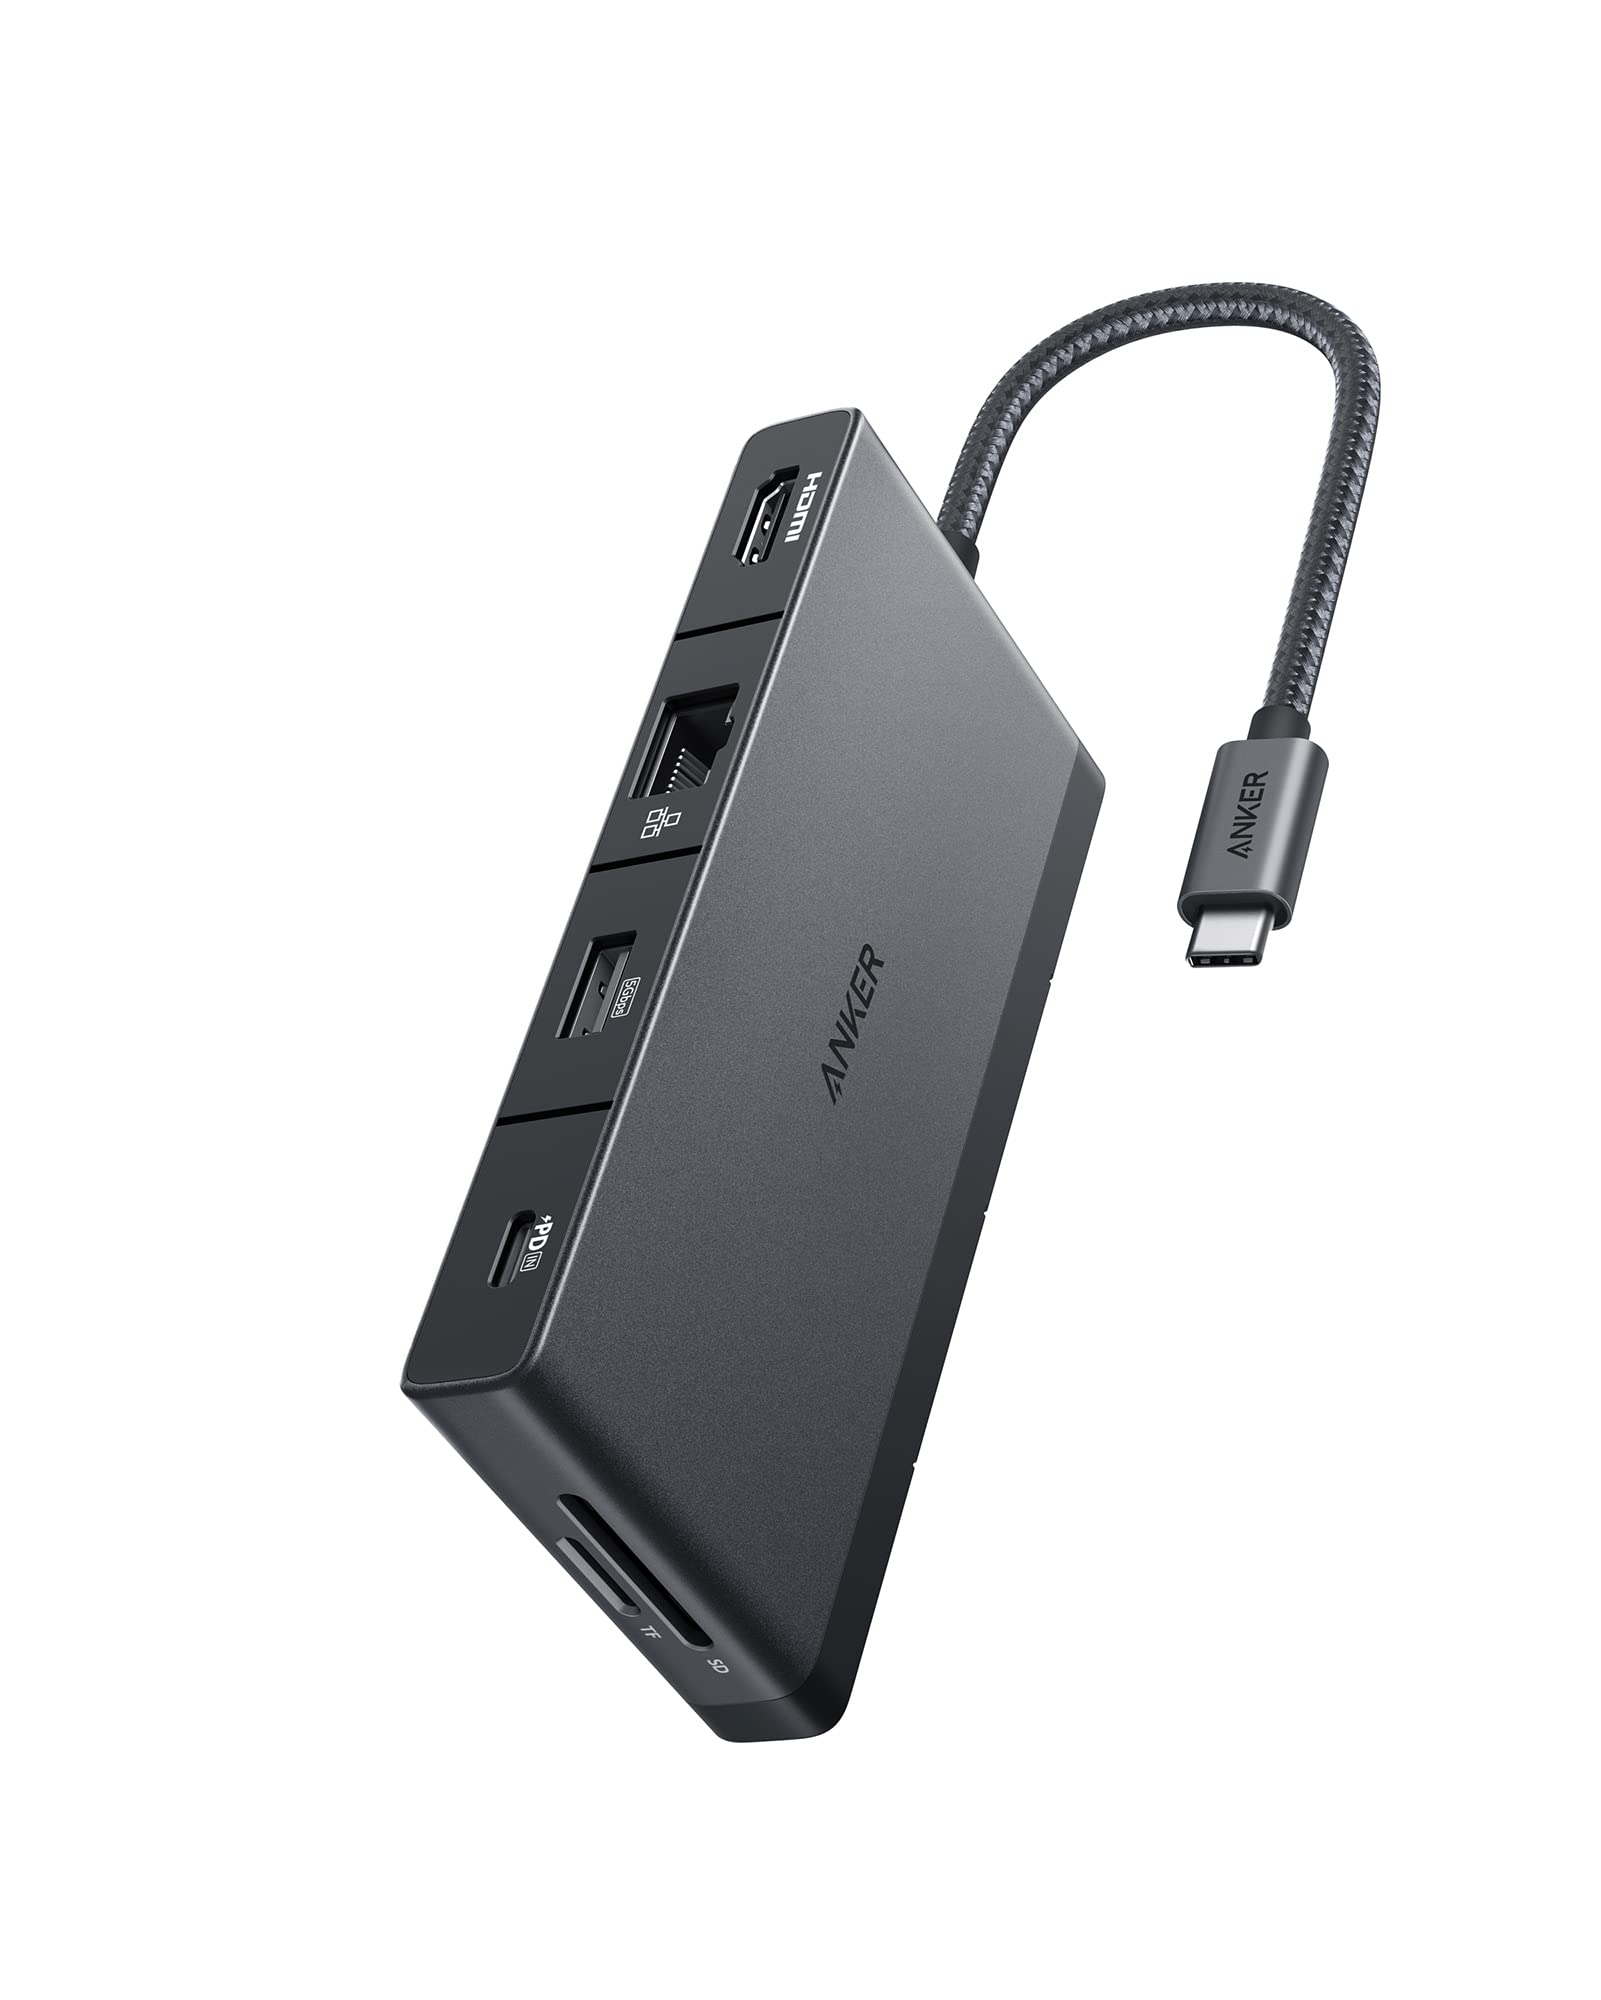 Anker 552 USB-C Hub (9-in-1, 4K HDMI) - Anker US